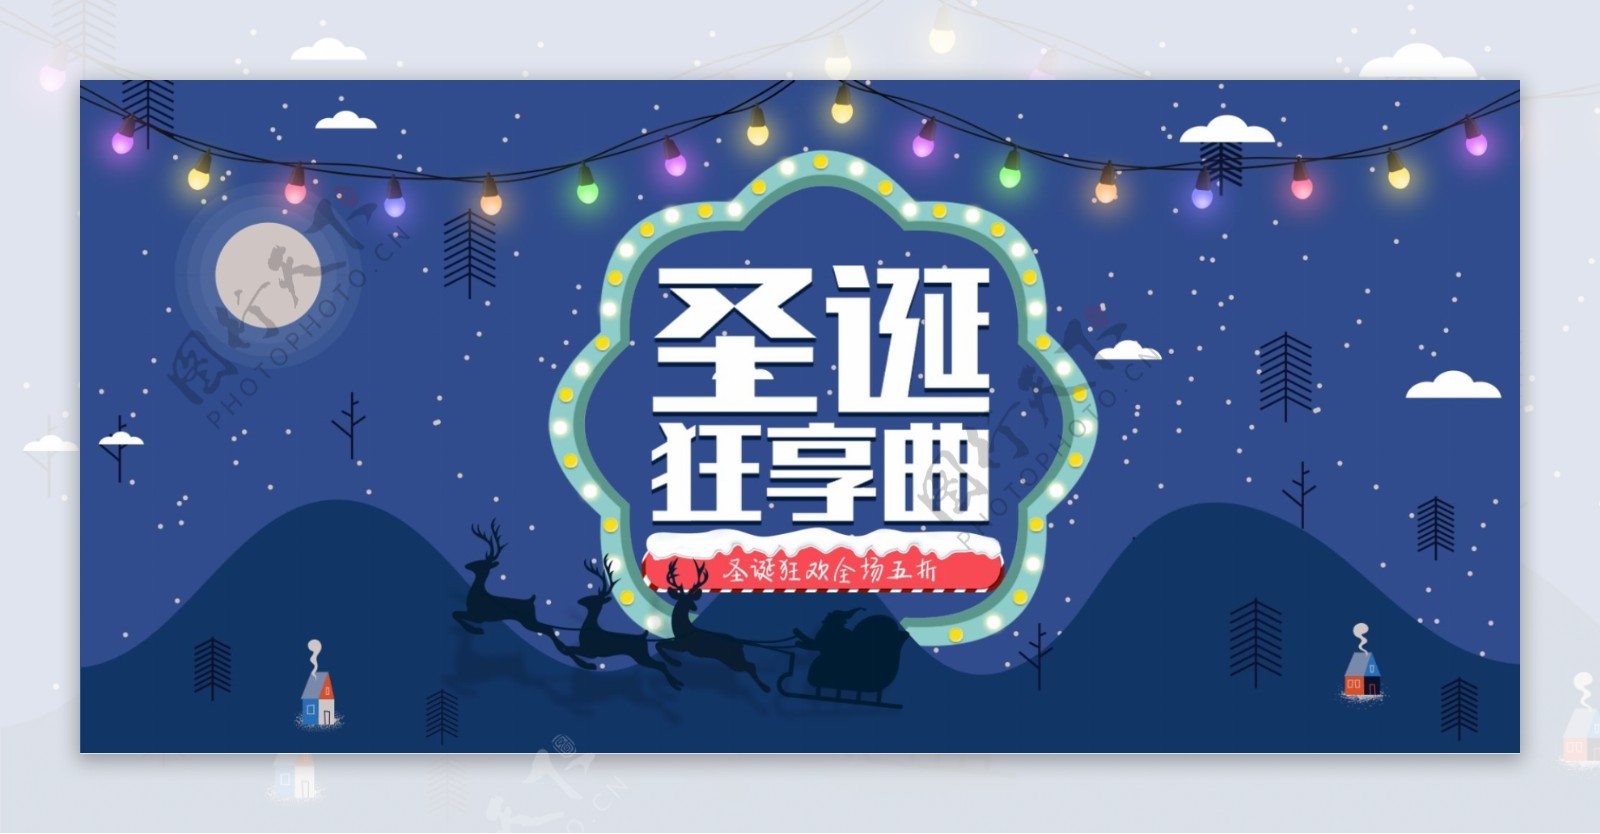 蓝色简洁圣诞节促销礼物banner